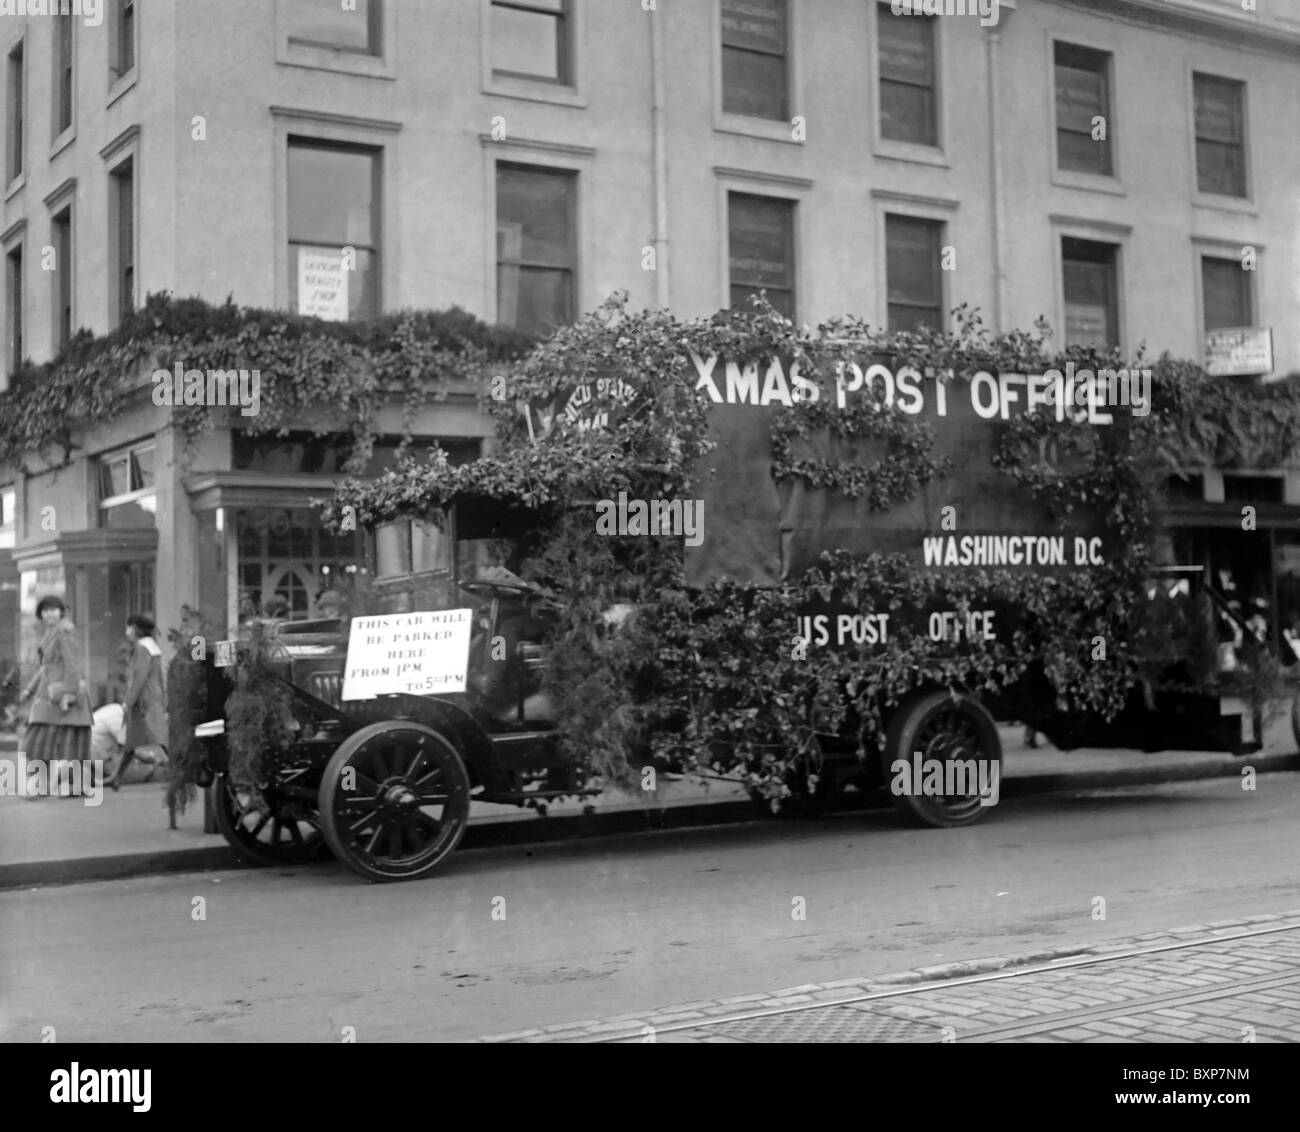 Bureau de poste de noël - Noël décoré camion postal à Washington DC, vers 1922 Banque D'Images